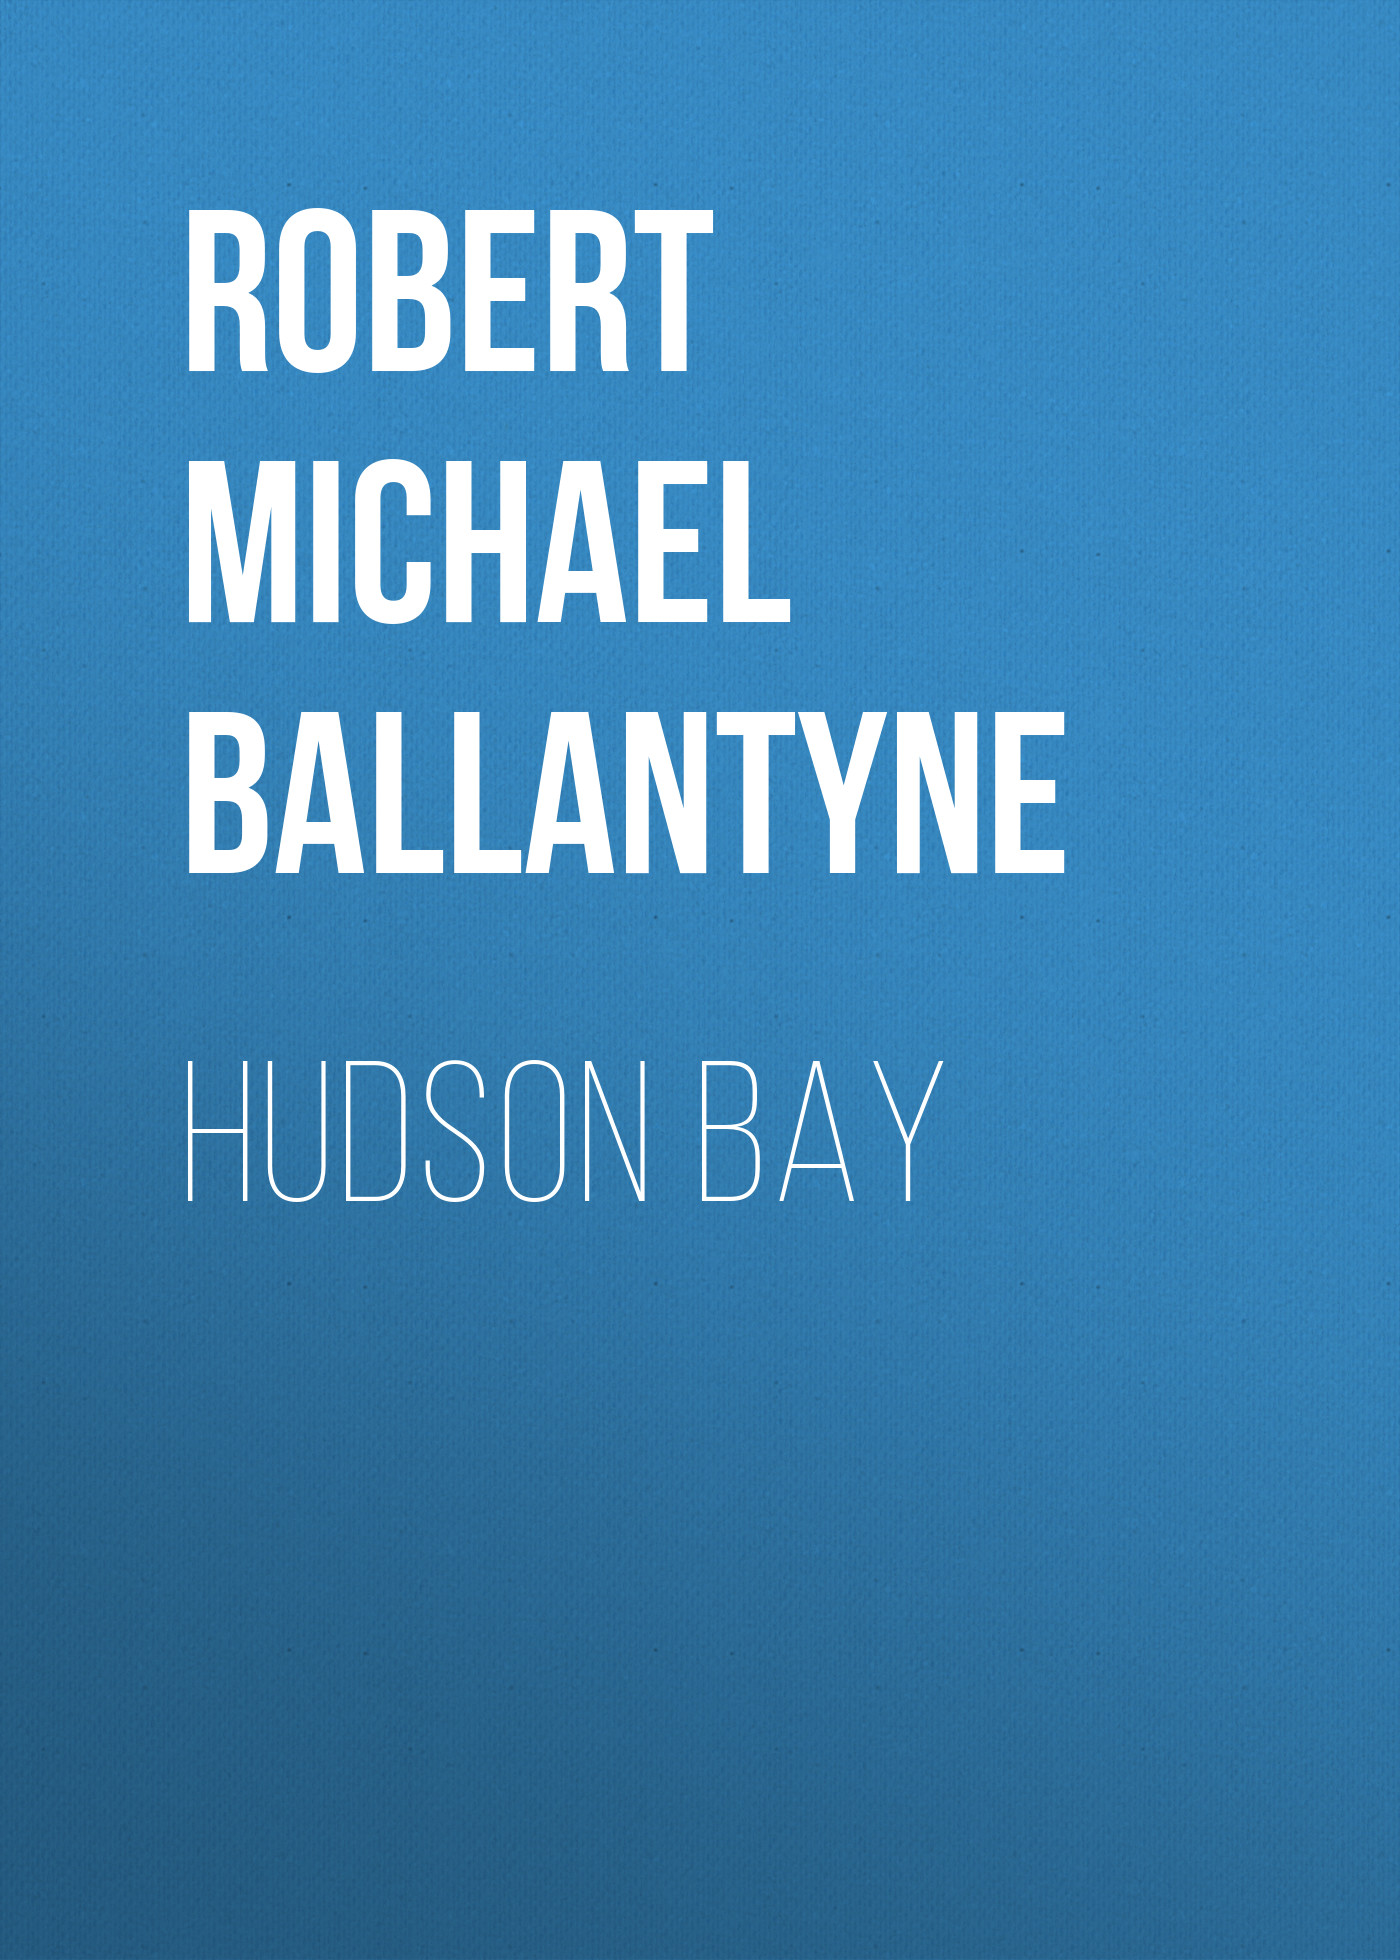 Книга Hudson Bay из серии , созданная Robert Michael Ballantyne, может относится к жанру Книги о Путешествиях, История, Зарубежная образовательная литература, Зарубежная старинная литература, Зарубежная классика. Стоимость электронной книги Hudson Bay с идентификатором 36095661 составляет 0 руб.